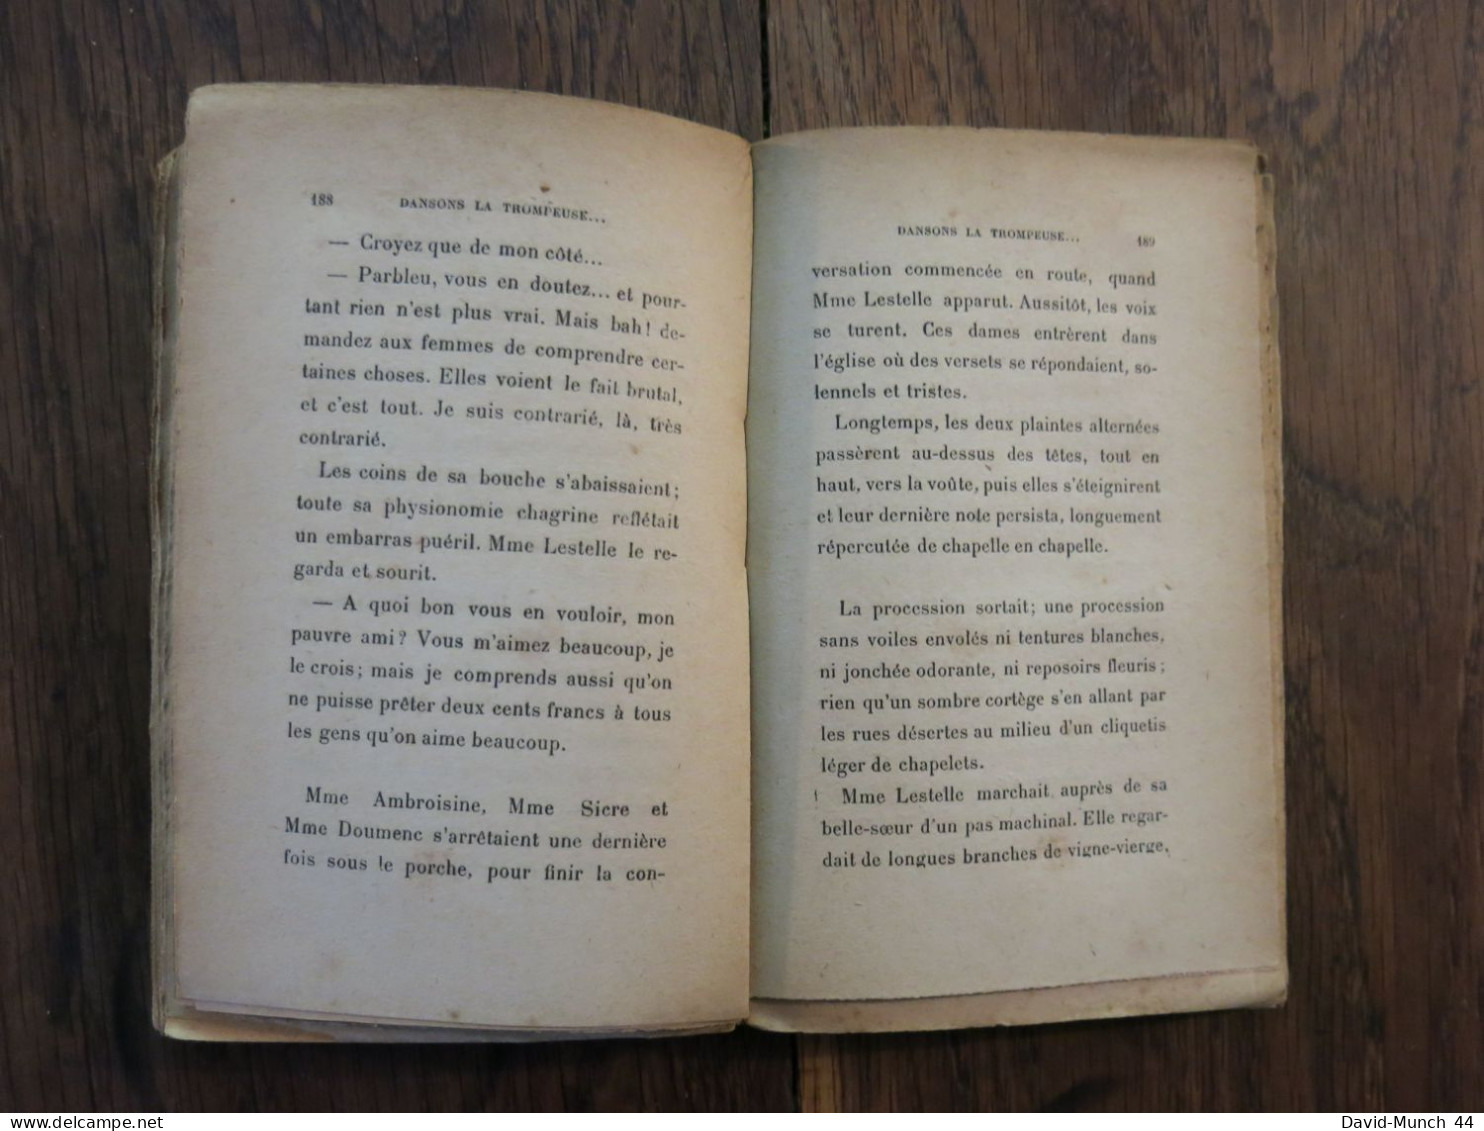 Dansons la trompeuse de Raymond Escholier. Paris, Bernard Grasset, éditeur. 1921